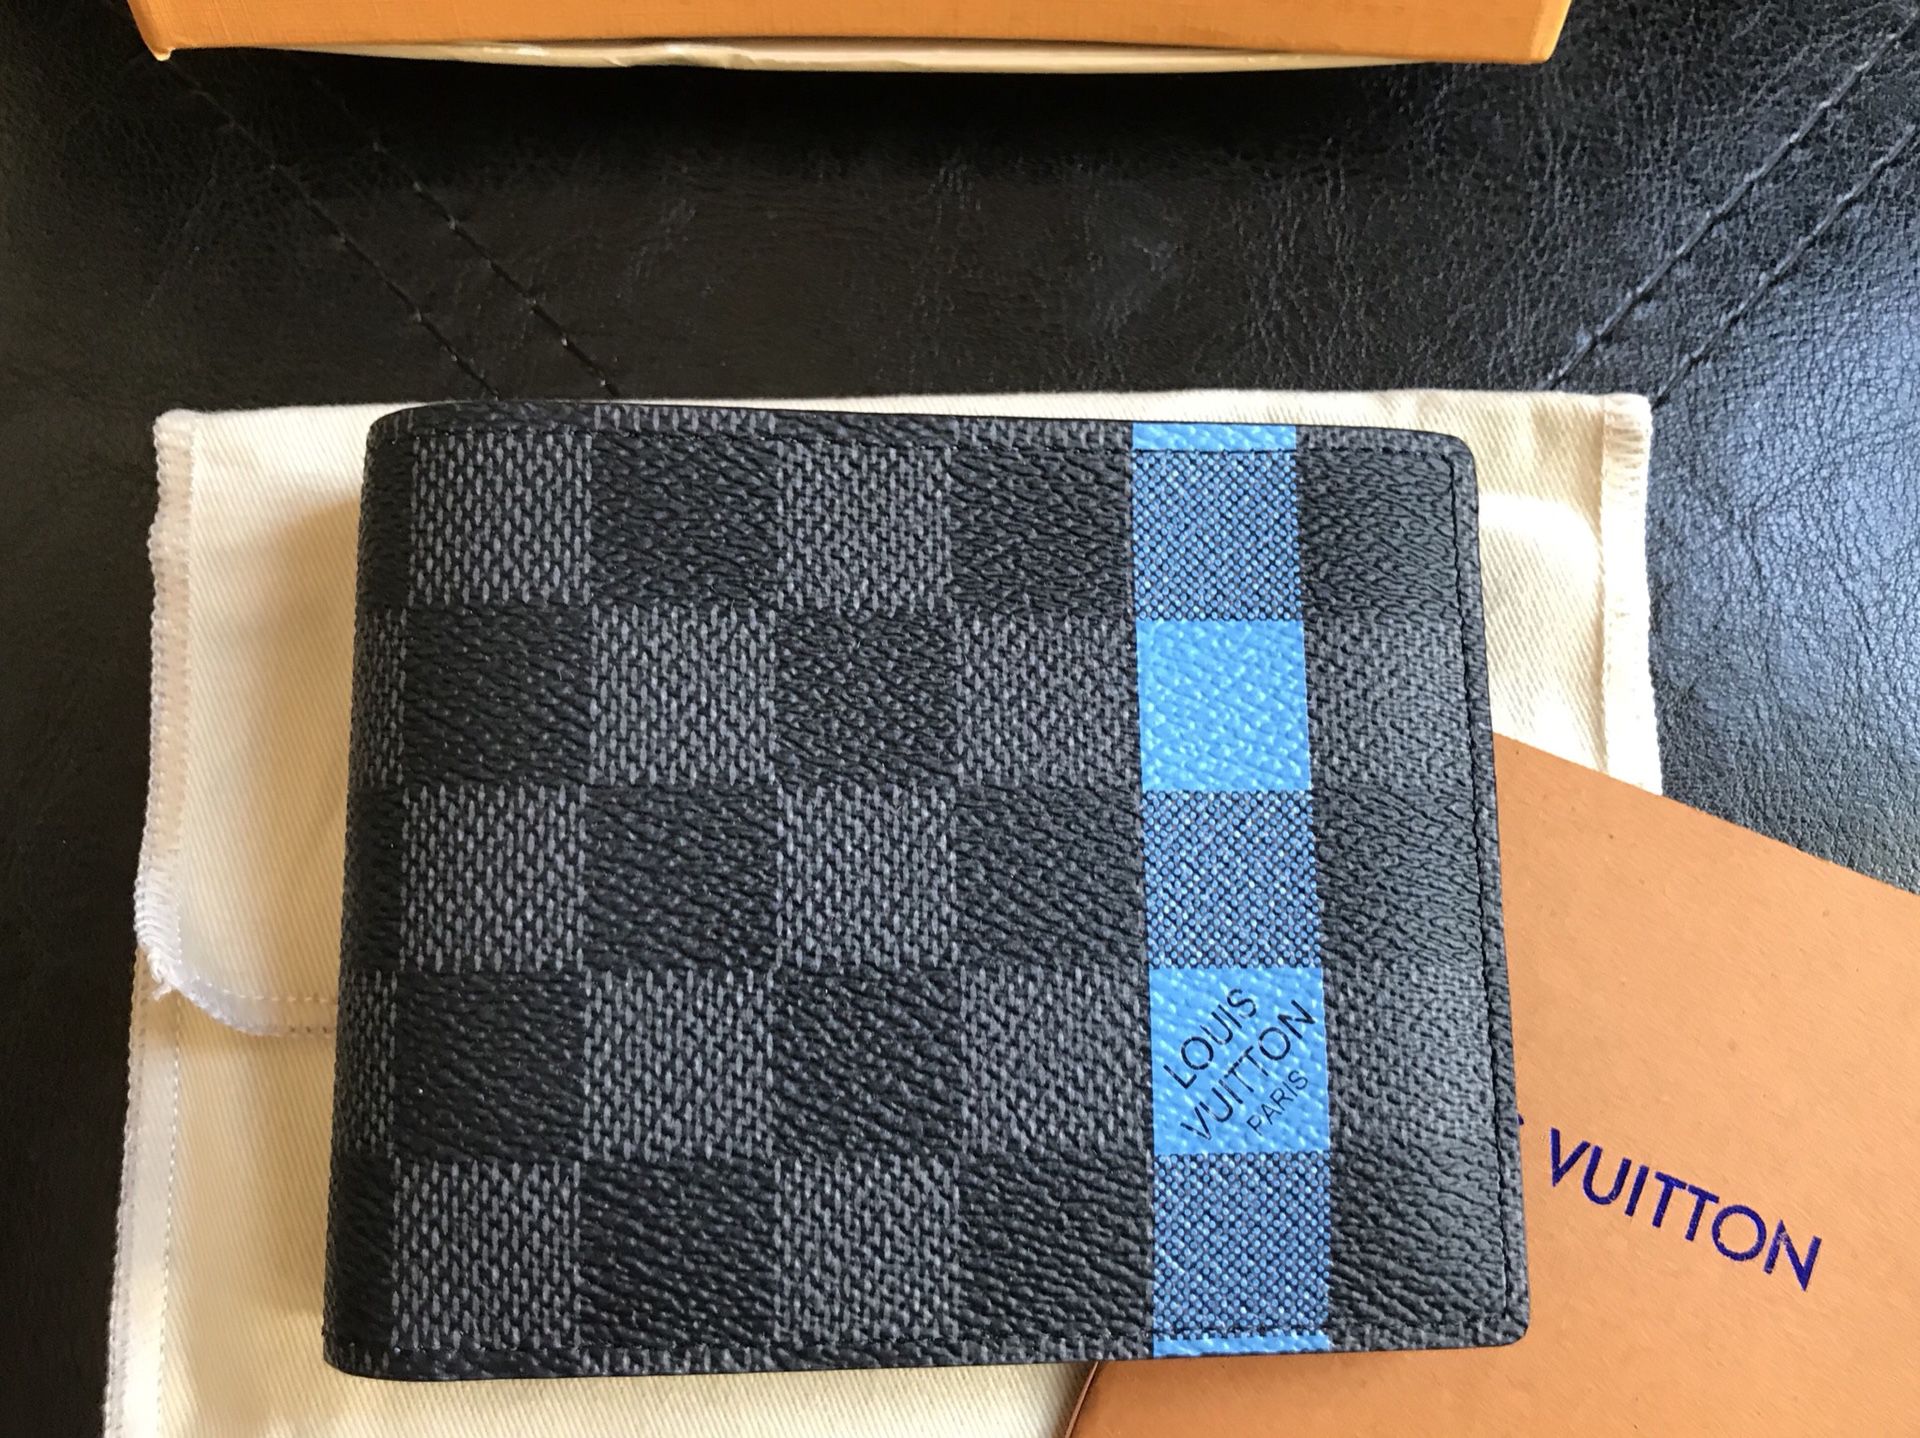 Louis Vuitton Damier Graphite Nemeth Rope Slender Wallet w/ Tags - Black  Wallets, Accessories - LOU229682